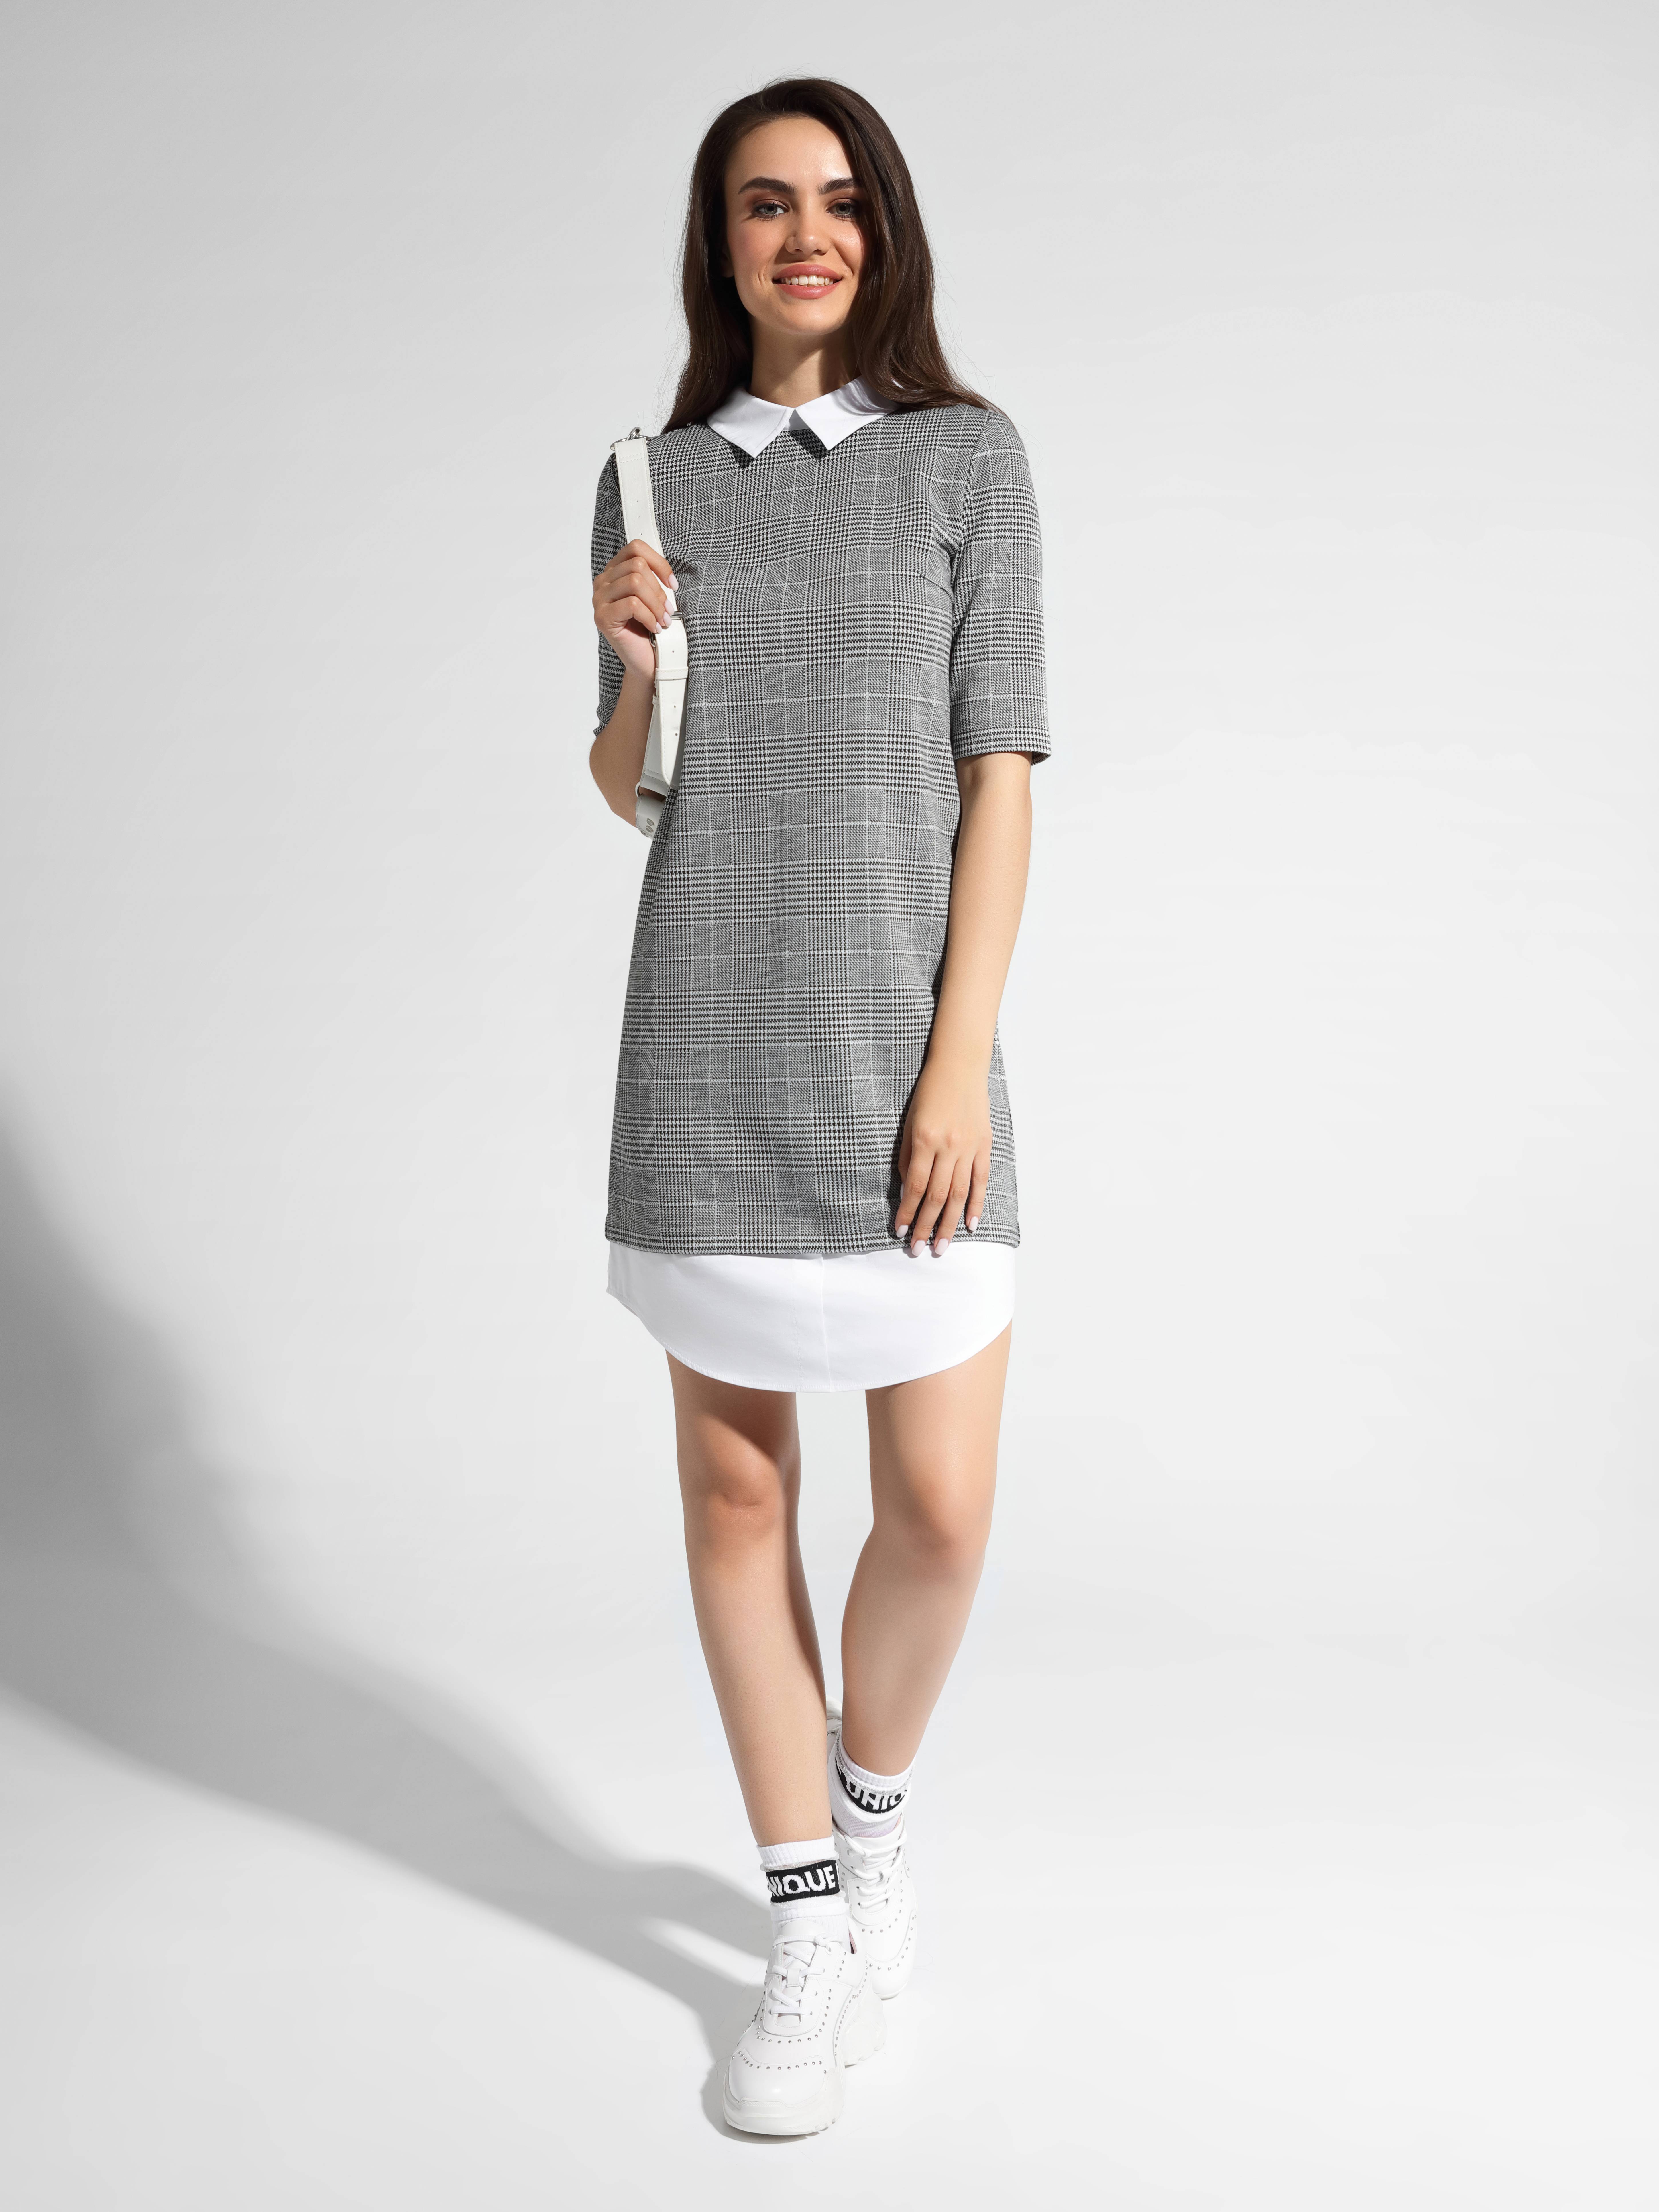 Платье в клетку с имитацией рубашки LPL 1052 Conte ⭐️, цвет grey-ivory check, размер 164-100-106 - фото 1